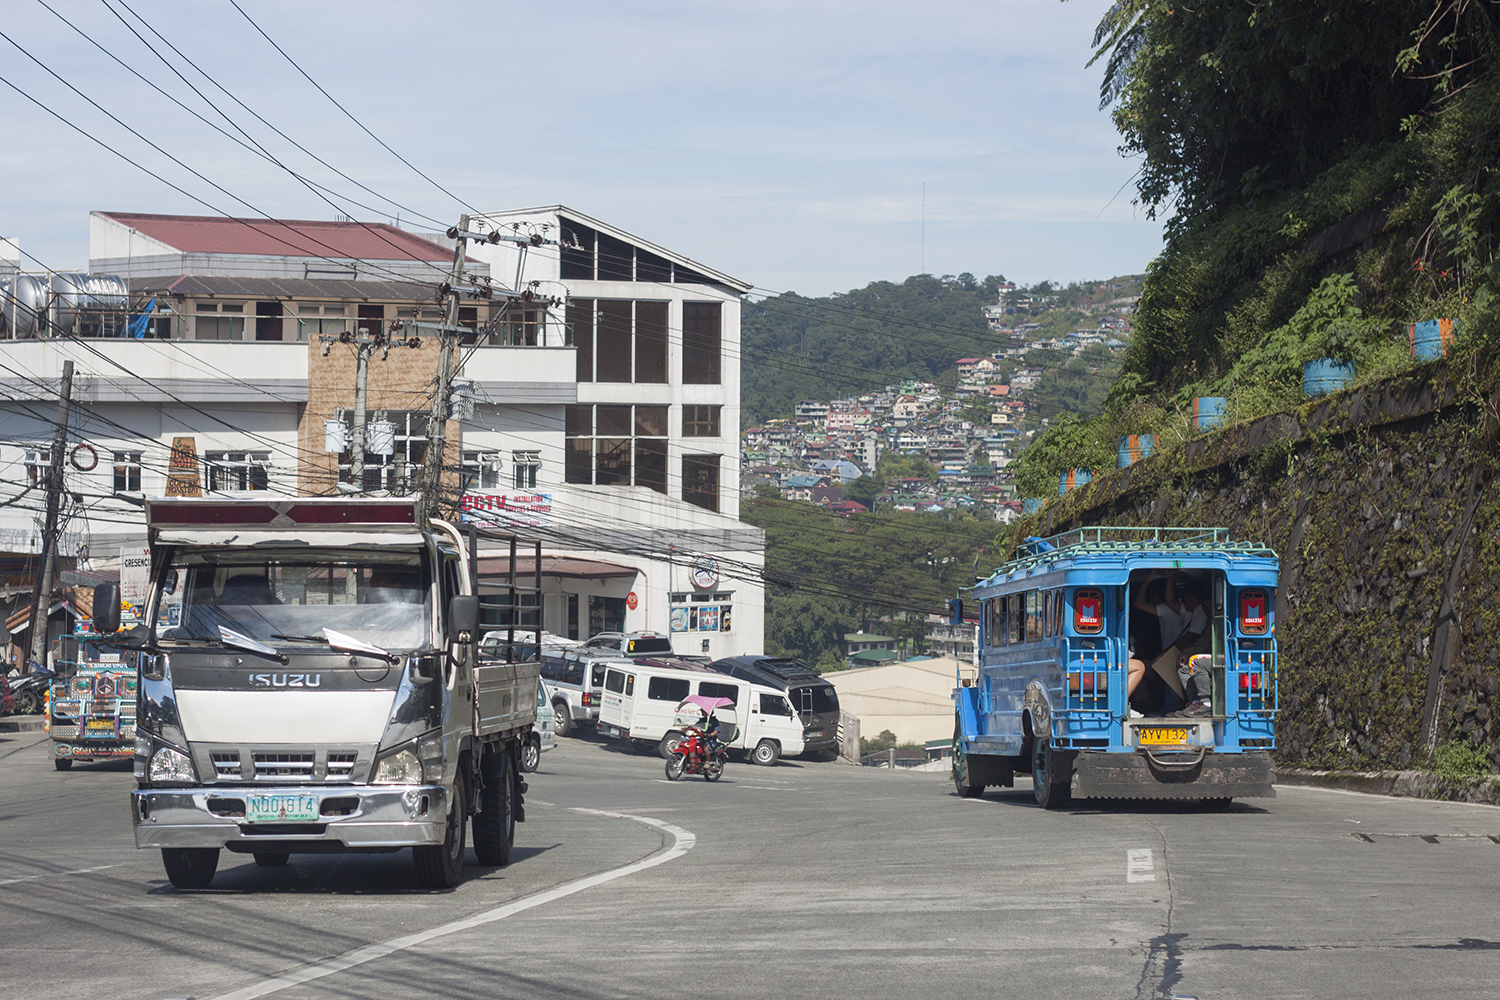 Thú vị những chiếc xe Jeepney đầy sắc màu ở Philippines - 5